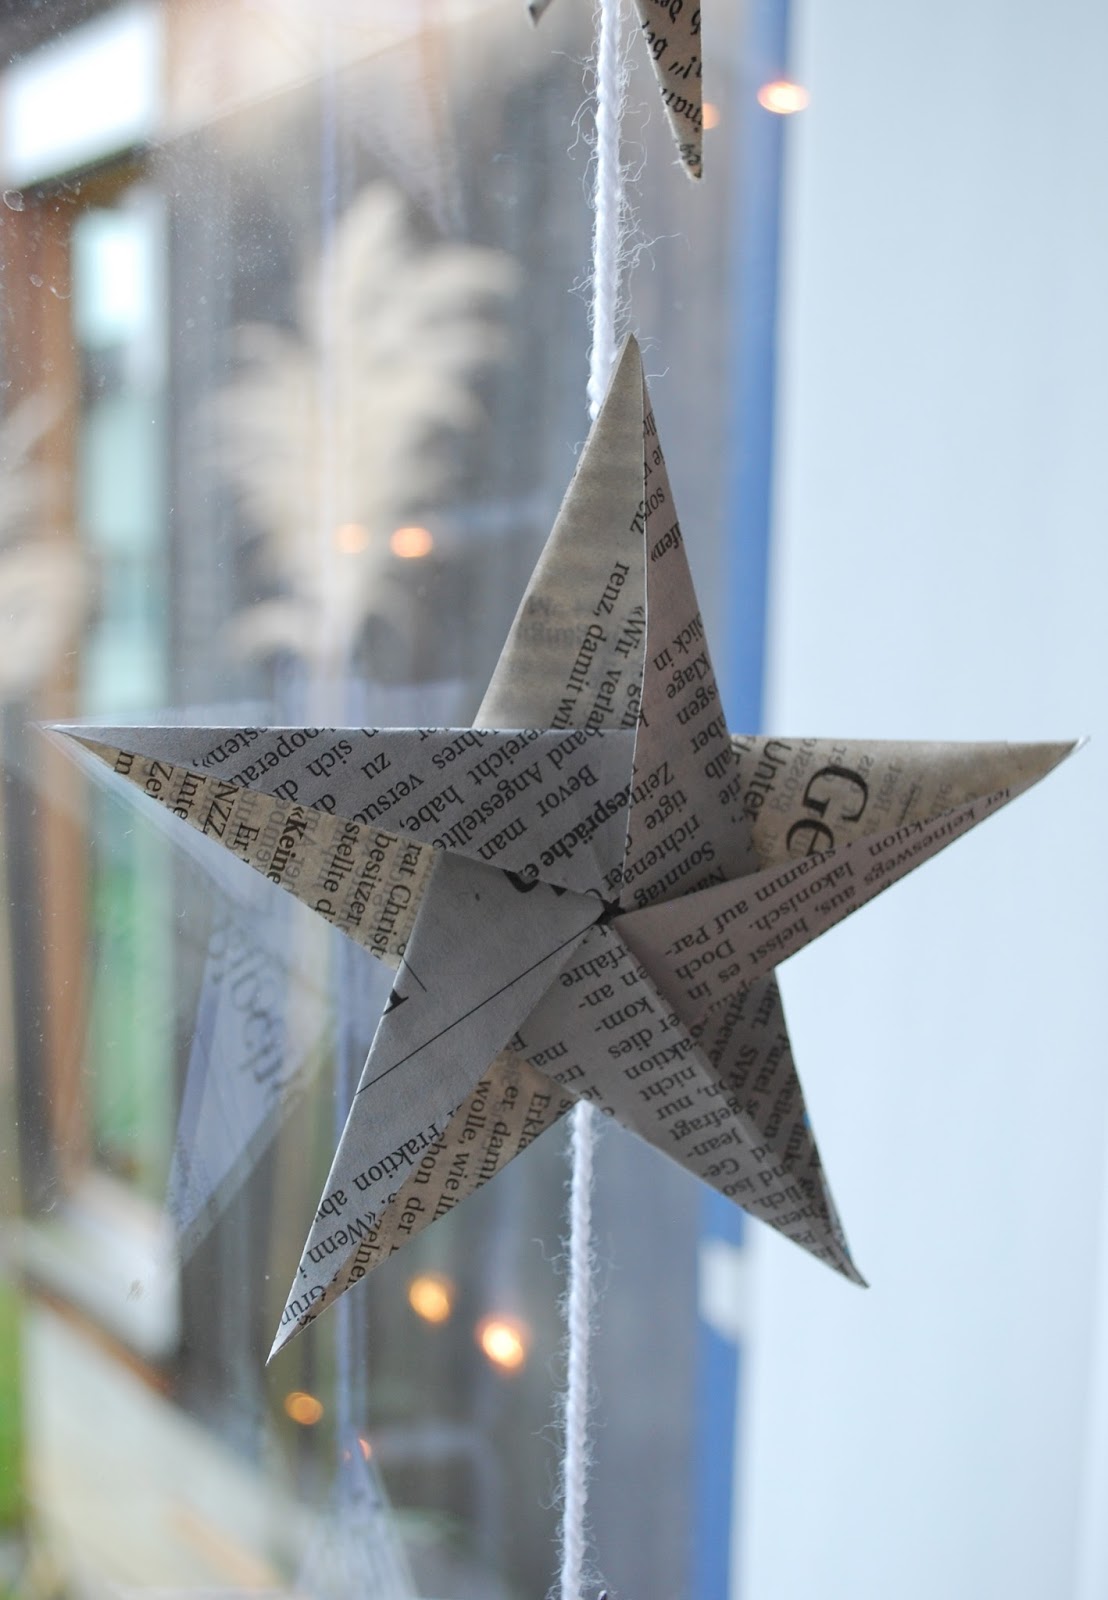 Origami für Weihnachten 9 Weihnachtsstern Faltanleitungen - origami weihnachtssterne bastelanleitung